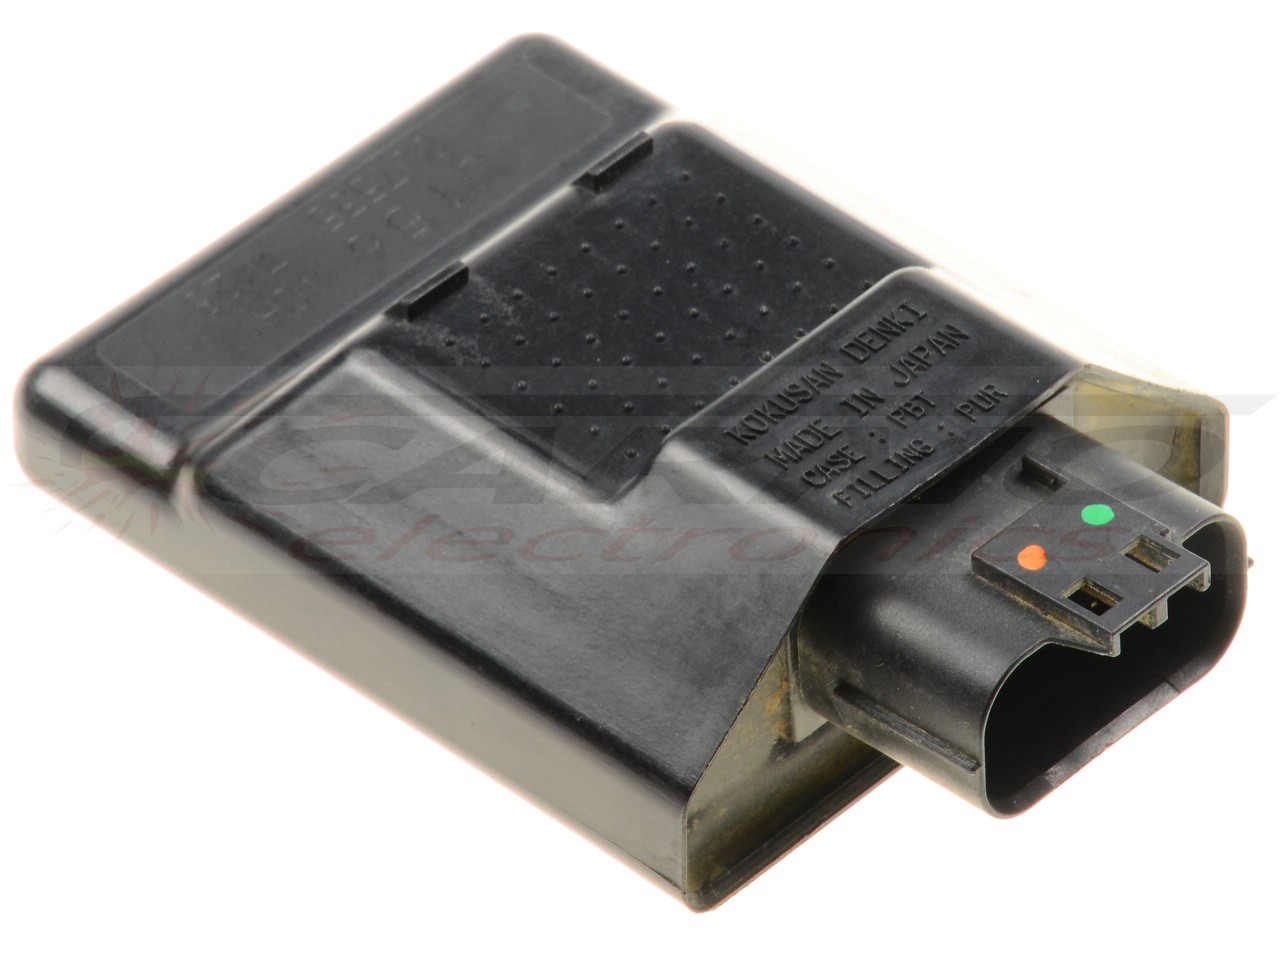 RMZ250 RMZ 250 TCI CDI dispositif de commande boîte noire (J156, CU7535)